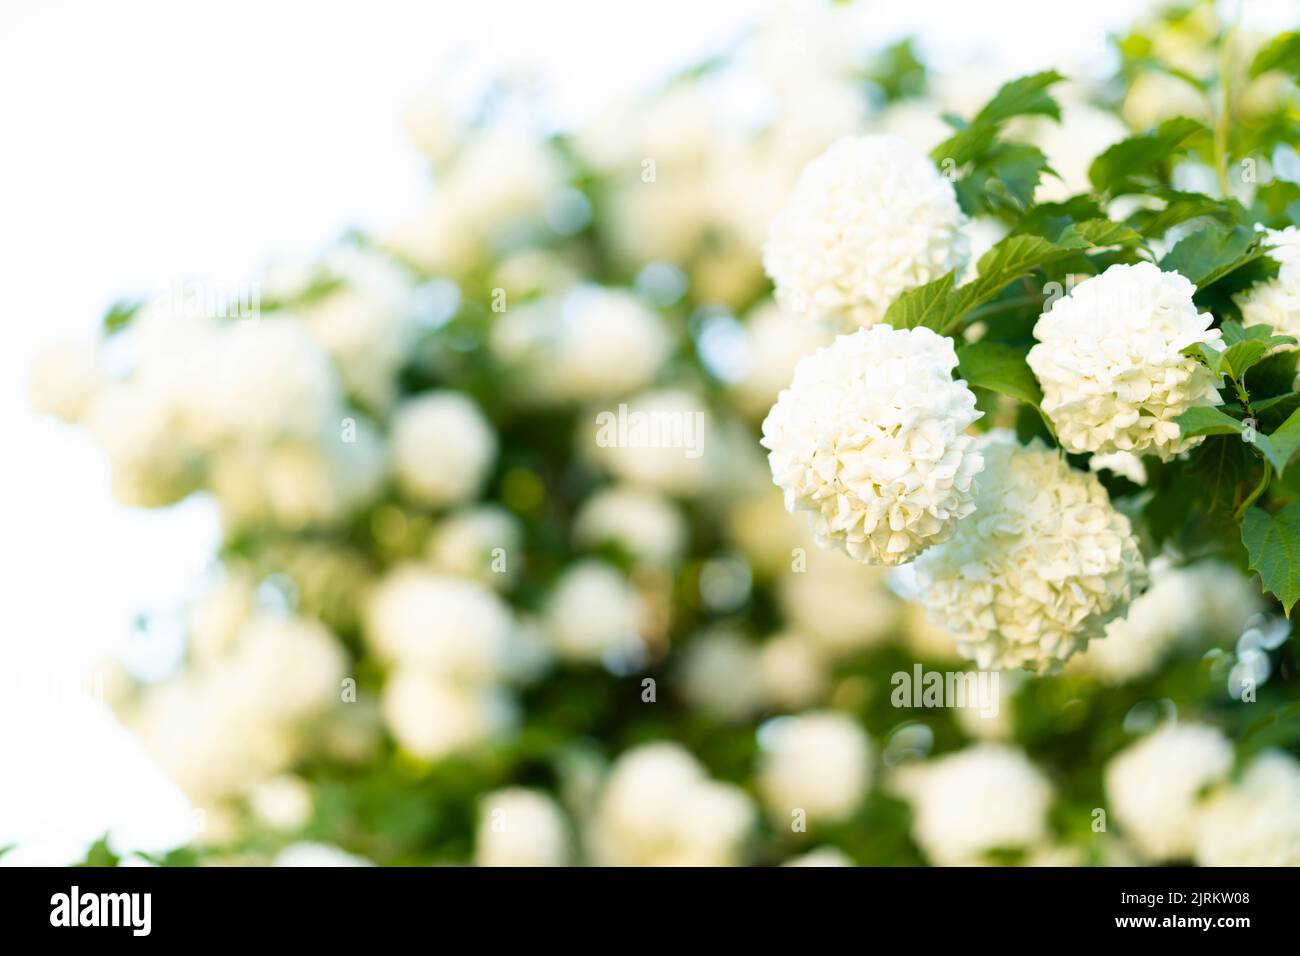 Blühende Hortensien von weißer Farbe. Üppig blühend, ein toller Hintergrund für Ihr Design. Wacholderrose (viburnum opulus, viburnum Boul de Neige) im Frühlingsgarten. Stockfoto